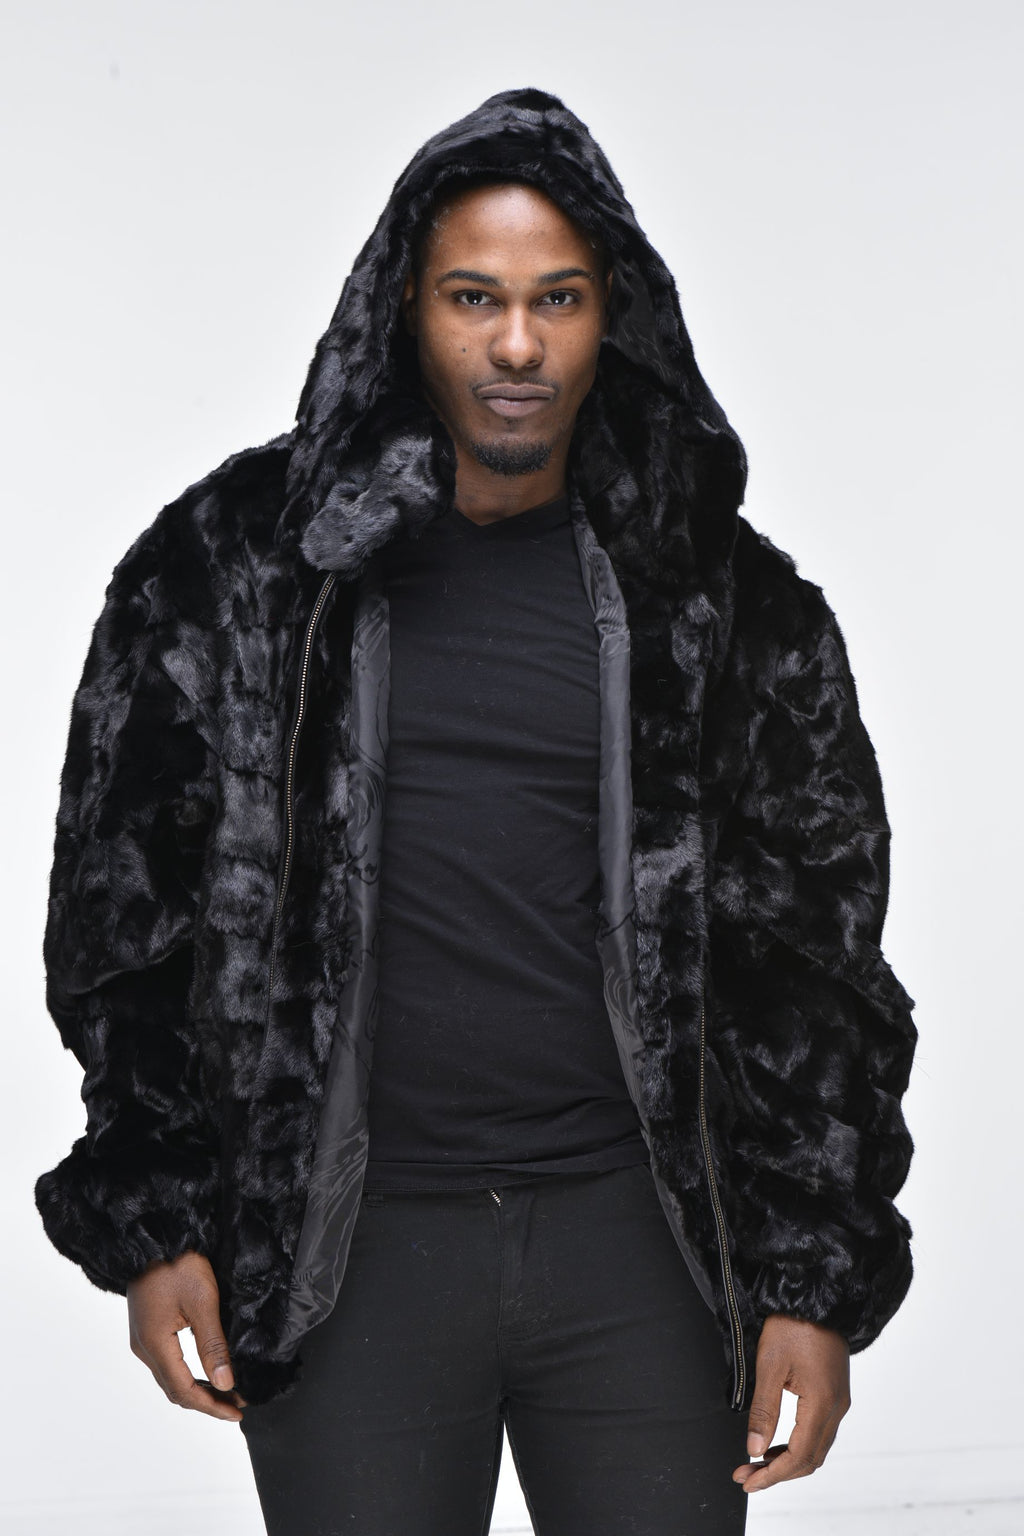 Men’s Mink Fur Bomber Jacket with Hood – Black